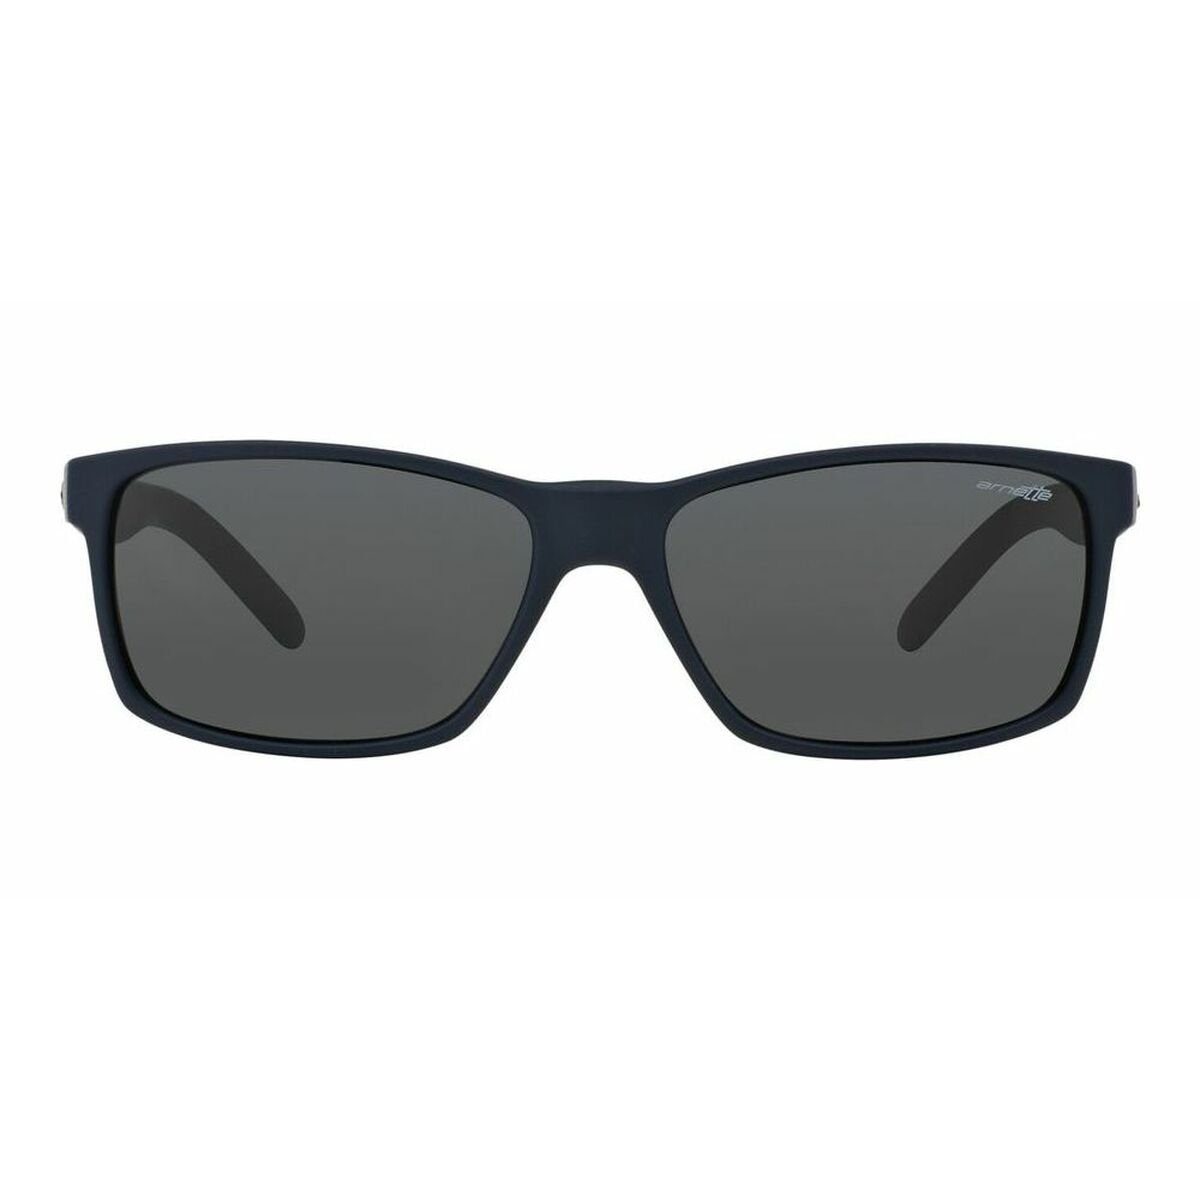 AN Sonnenbrille SLICKSTER 4185 UV400 Herrensonnenbrille Arnette Arnette